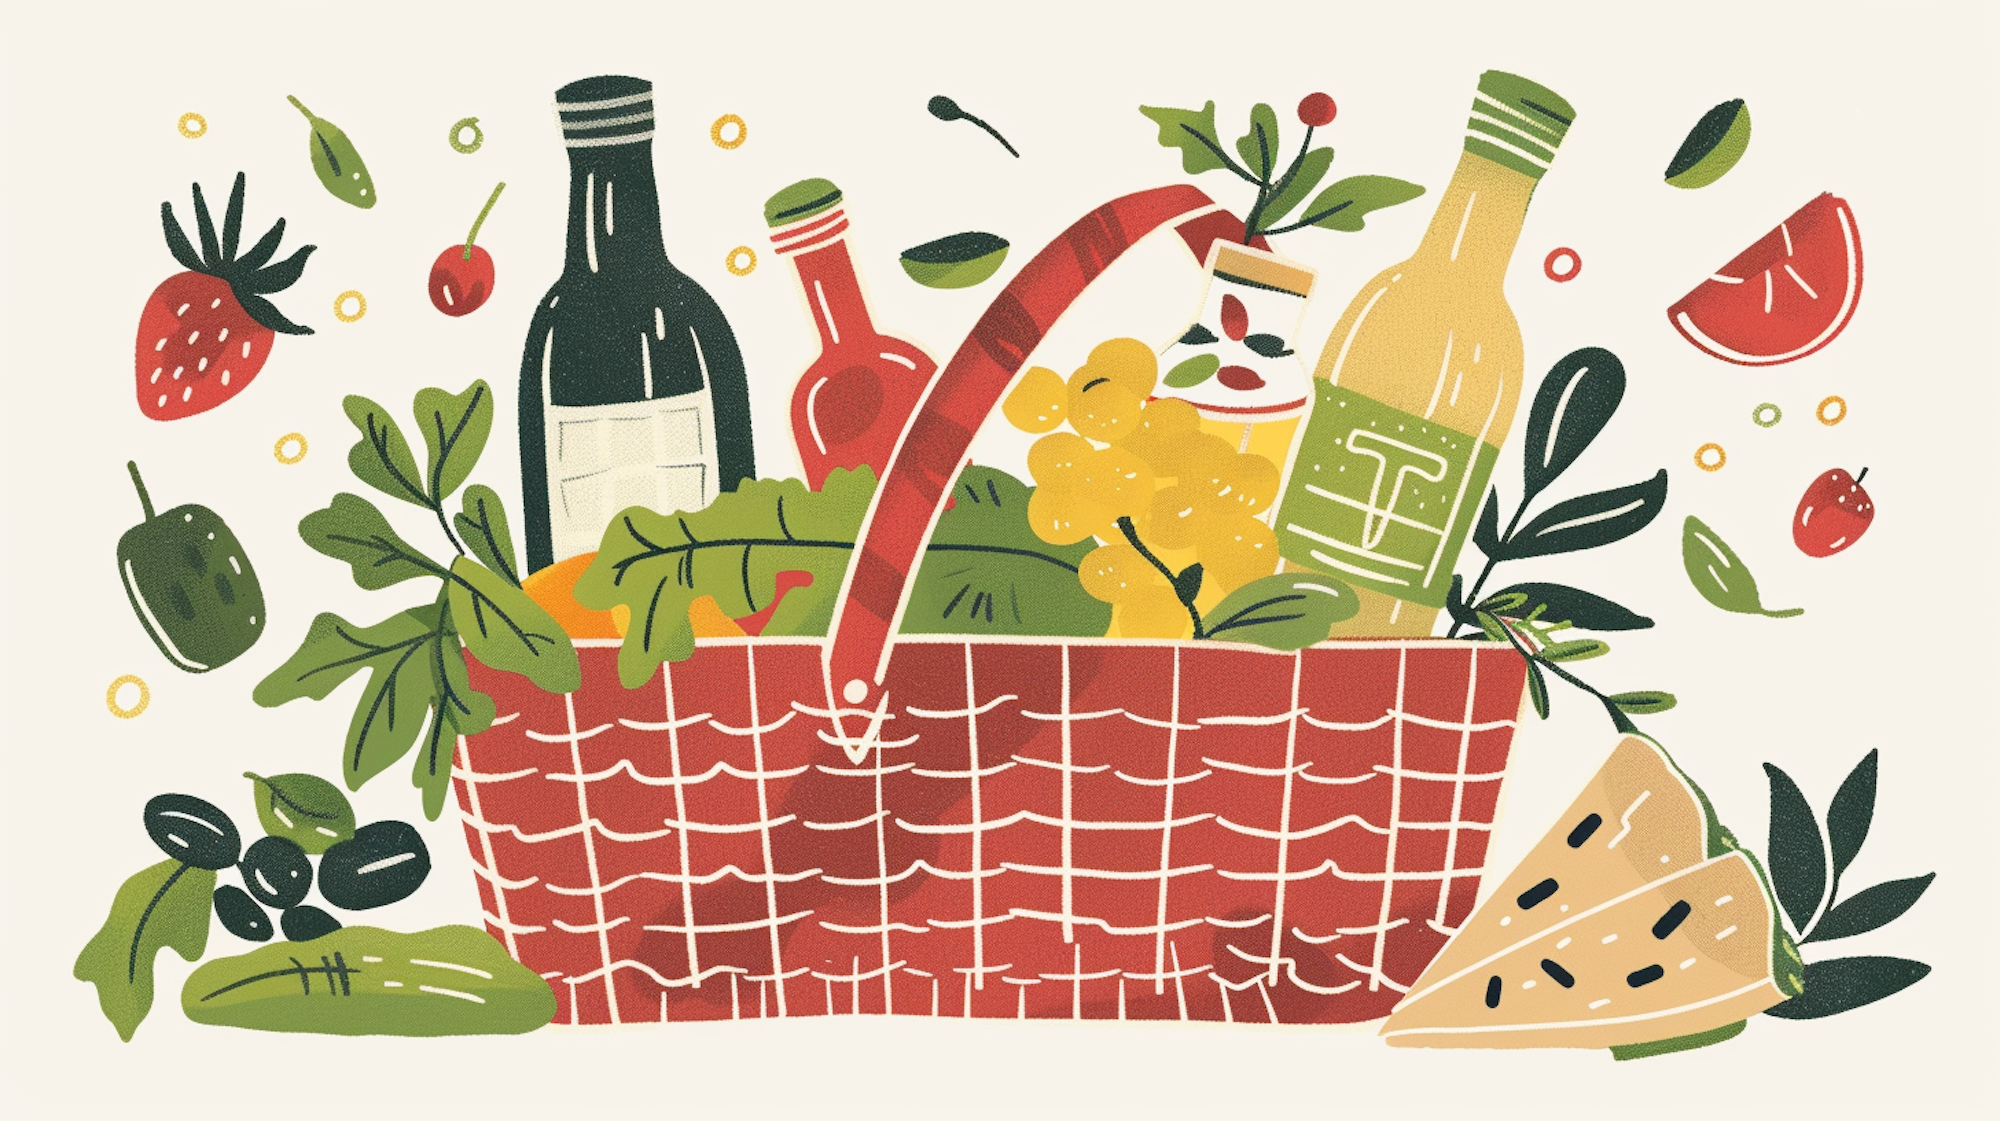 Illustration; Korb mit Obst, Gemüse und Saft